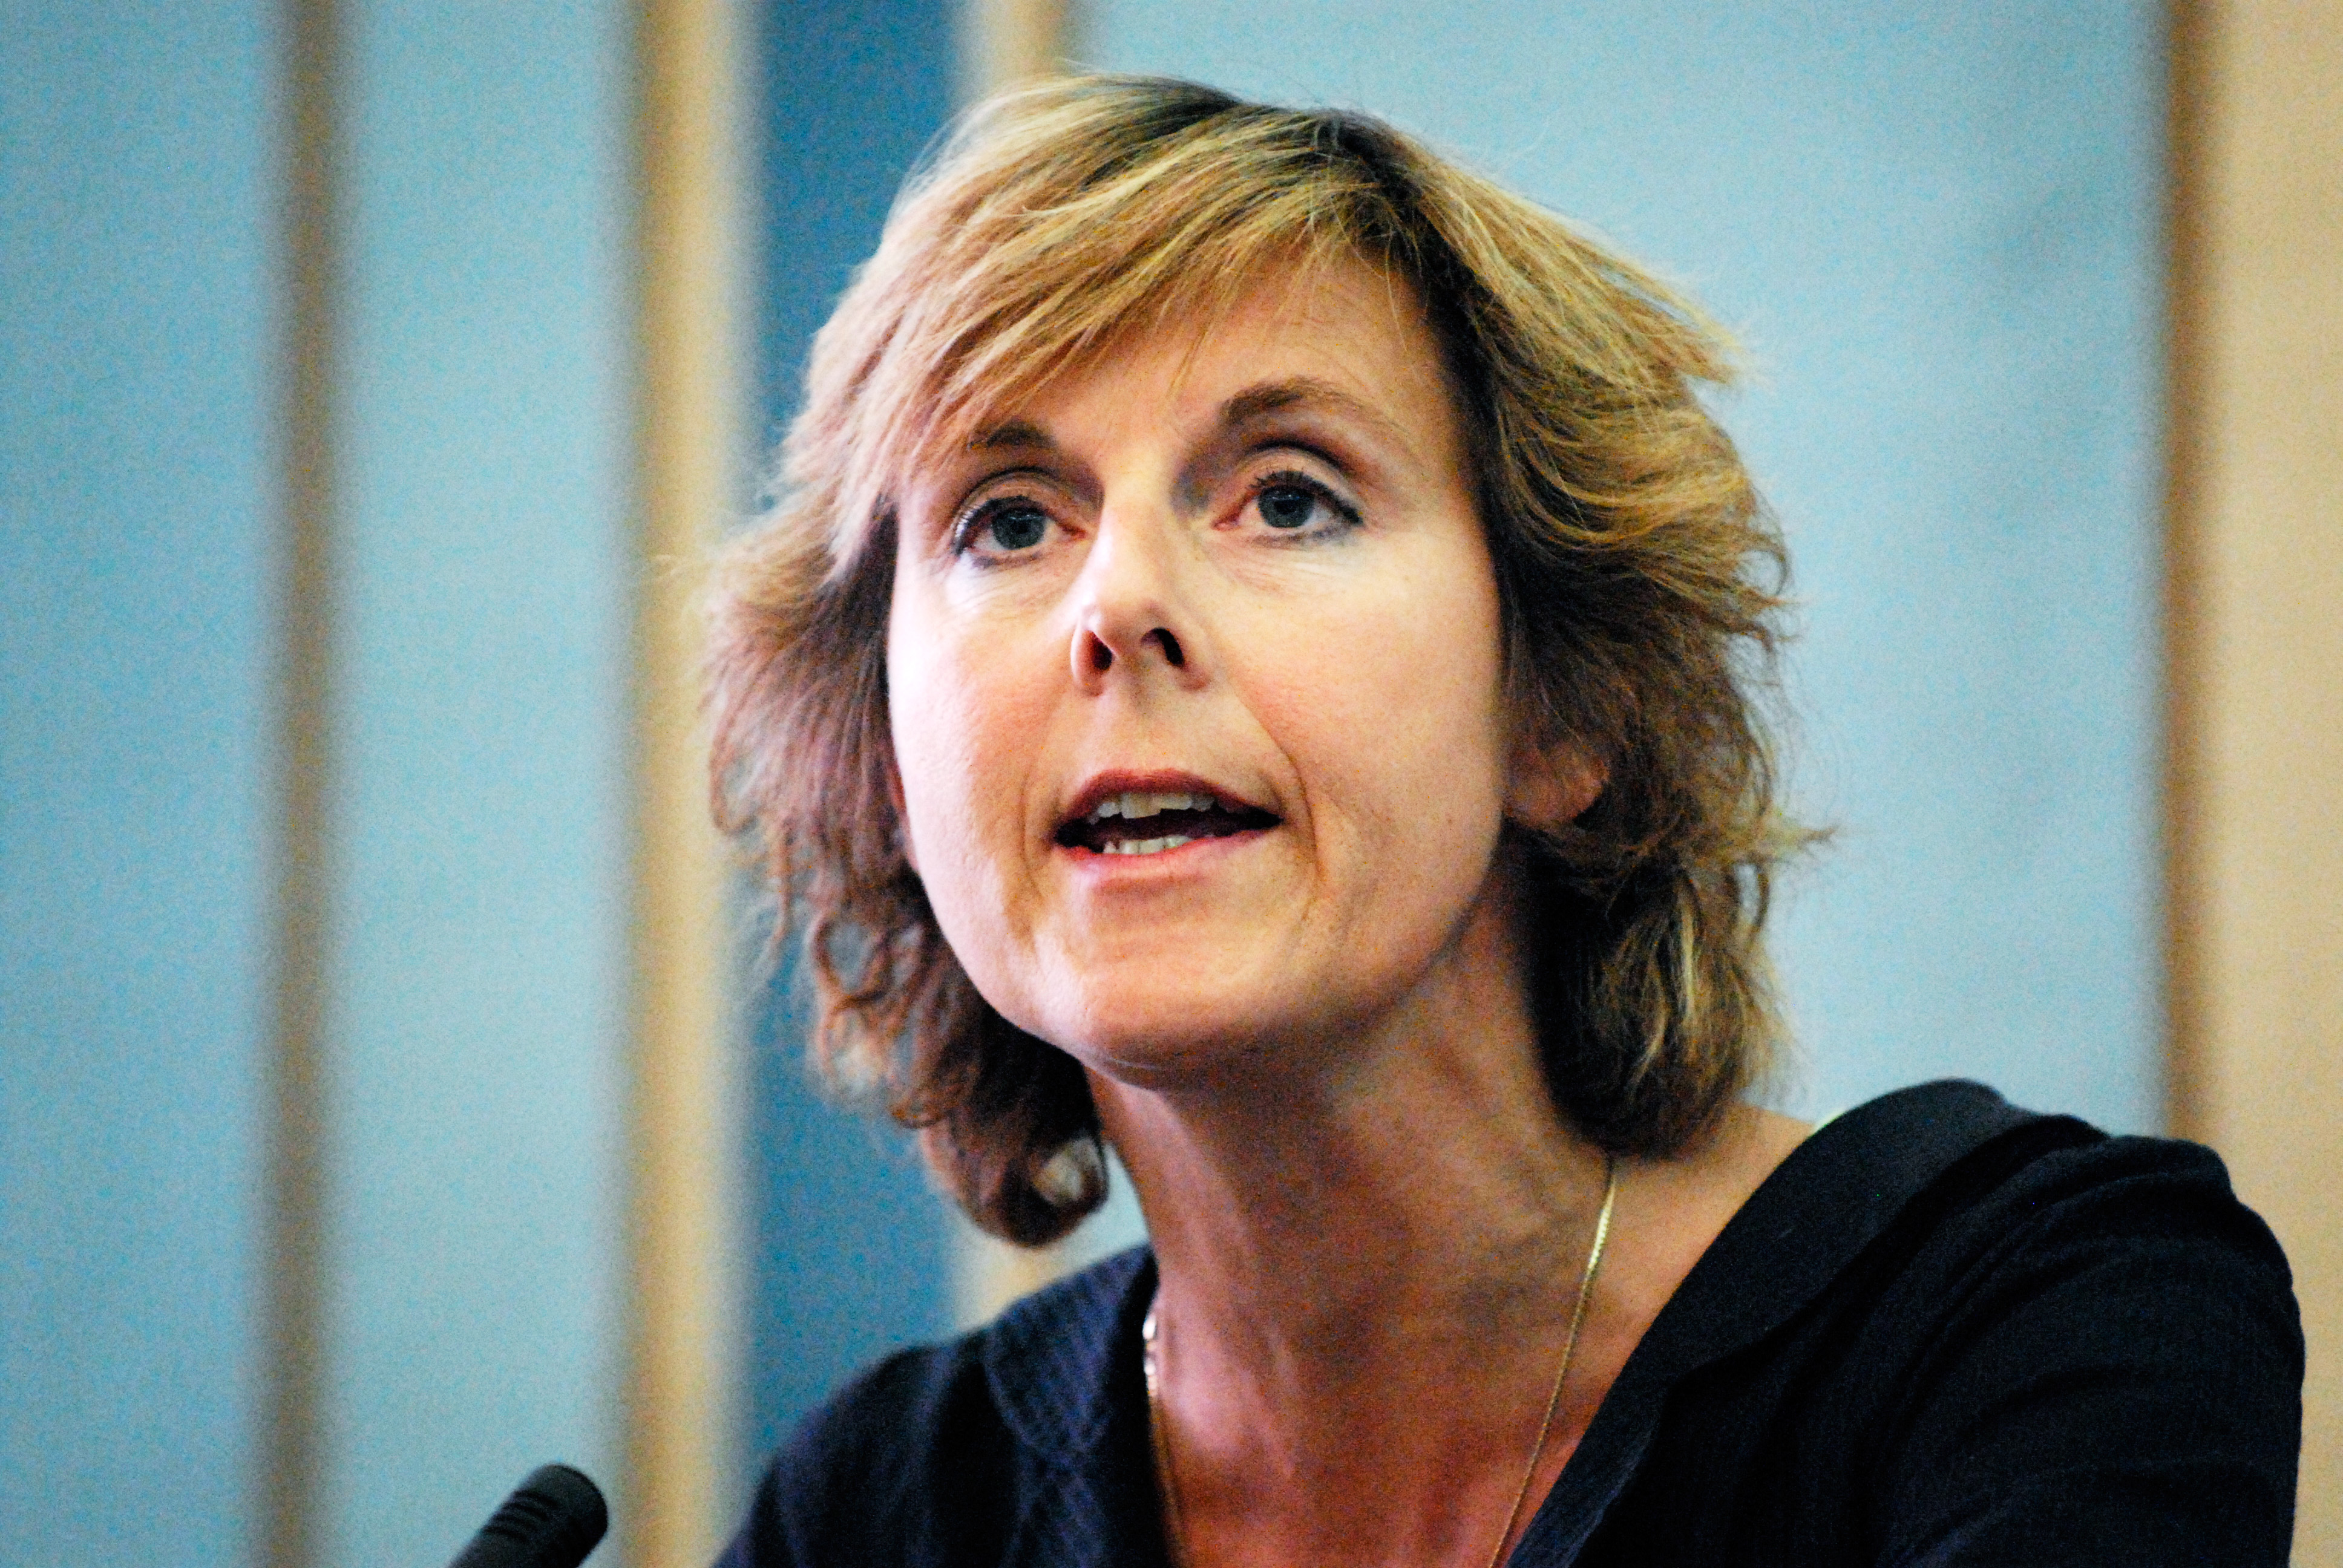 "Den grønne omstilling vil påvirke alle sider af vores samfund og vores tilværelse," siger Connie Hedegaard.